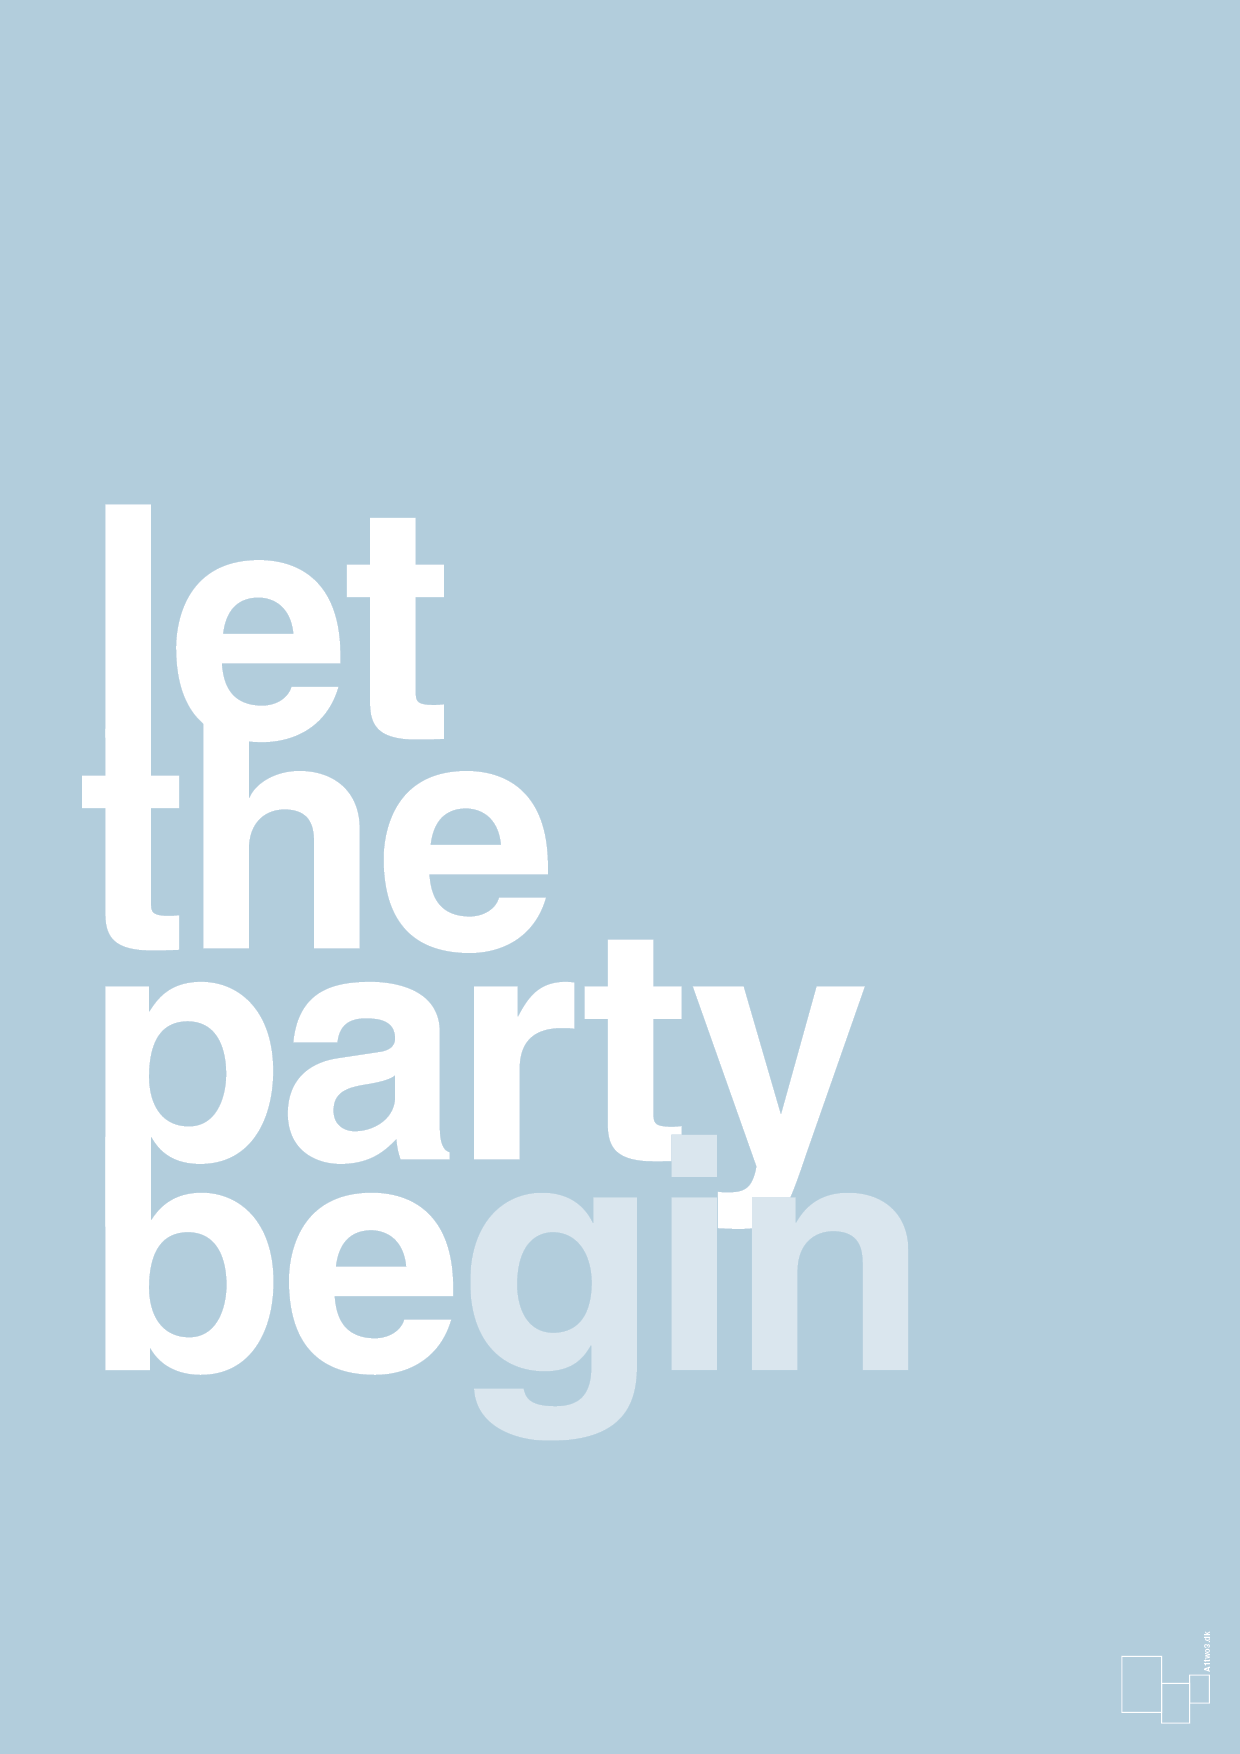 let the party begin - Plakat med Ordsprog i Heavenly Blue